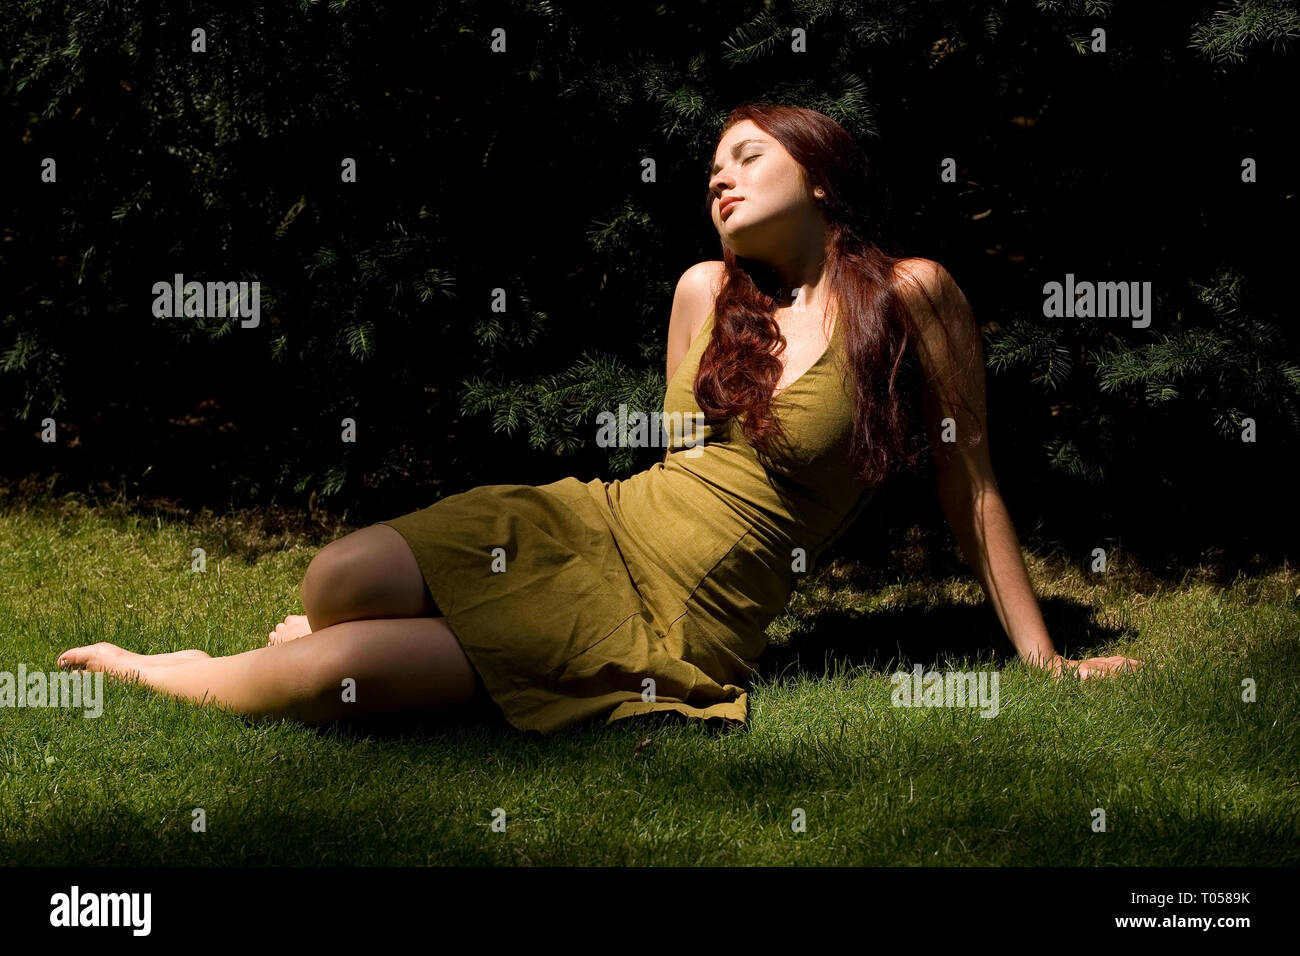 Eine junge Frau liegt entspannt in der Wiese und geniesst die Sonne Stockfoto